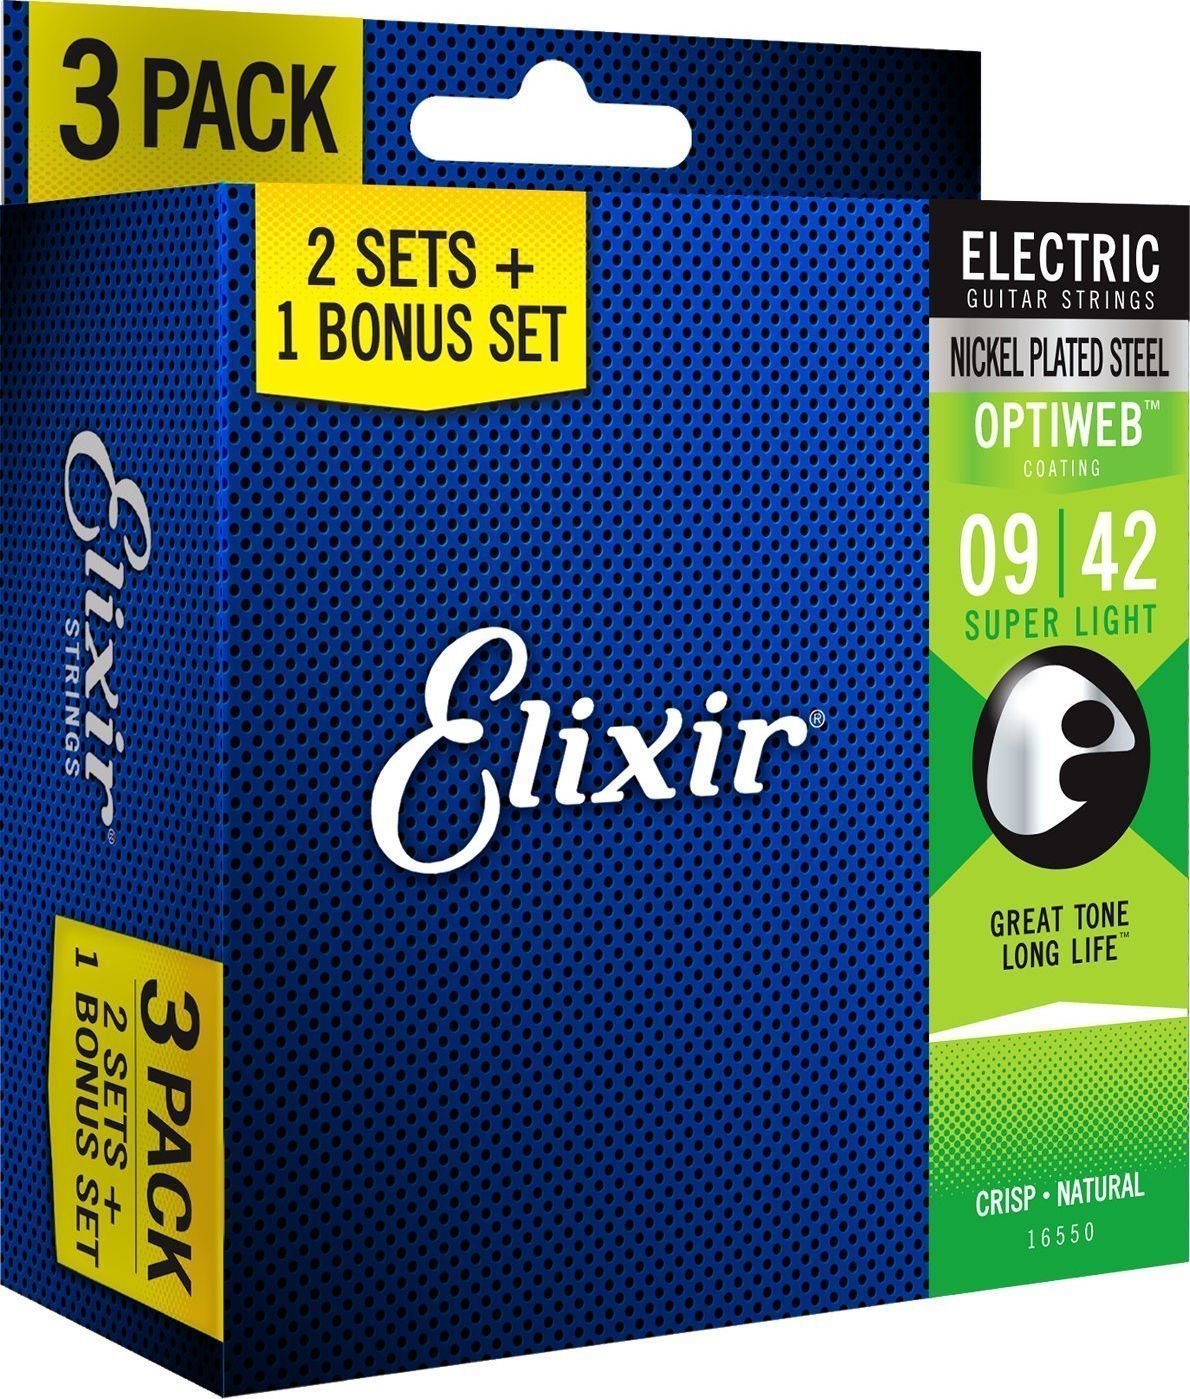 Cordes pour guitares électriques Elixir 16550 OPTIWEB Coating Super Light 9-42 3-PACK